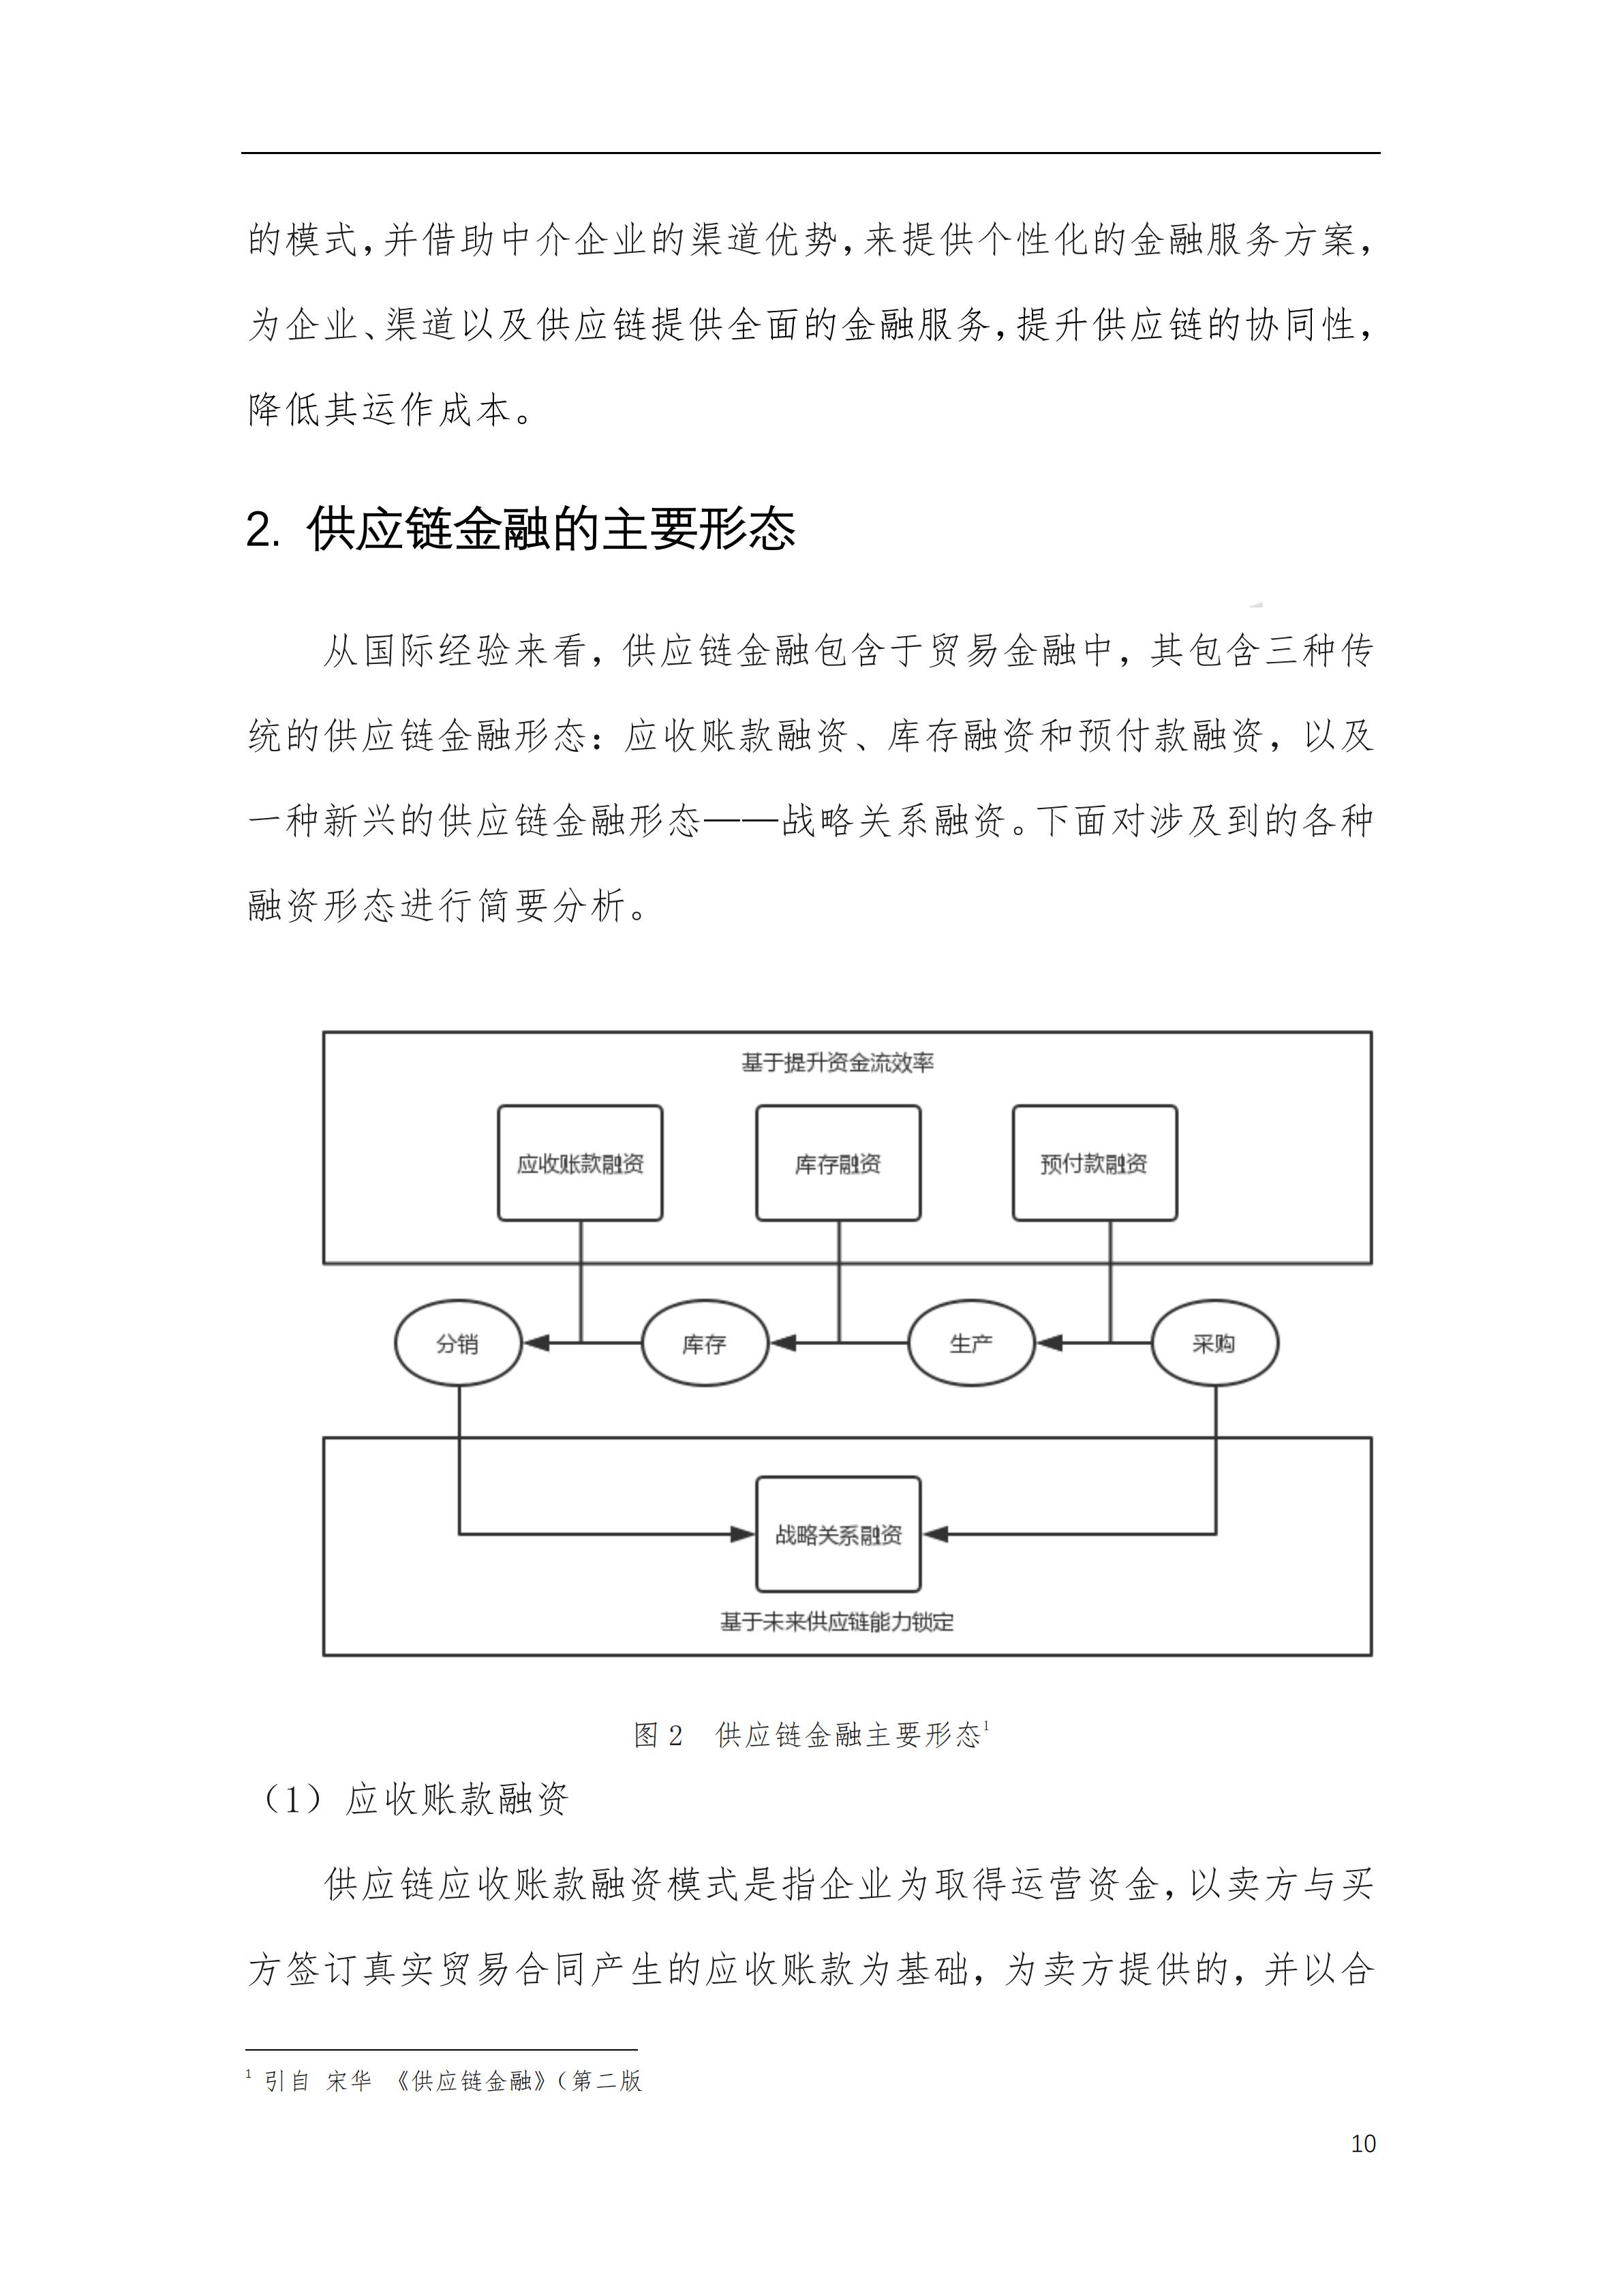 可信区块链推进计划：区块链与供应链金融白皮书（1.0版）定稿版